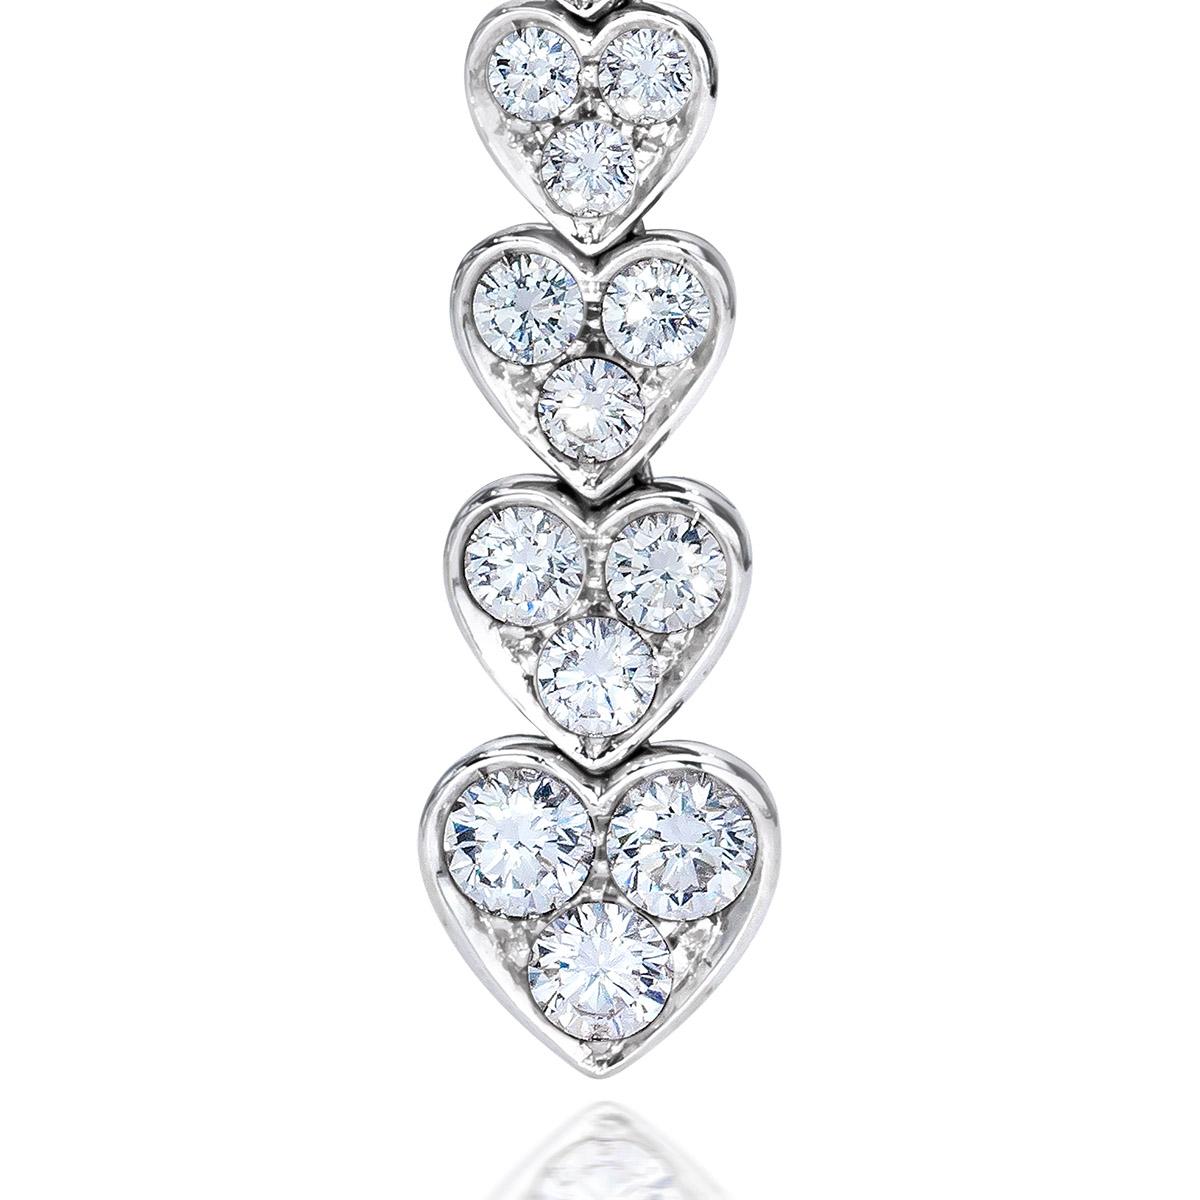 Ces superbes gouttes de diamant graduées en forme de cœur sont fabriquées à la main par le célèbre designer italien PIcchiotti. Serties dans de l'or blanc de 18kt, ces 3